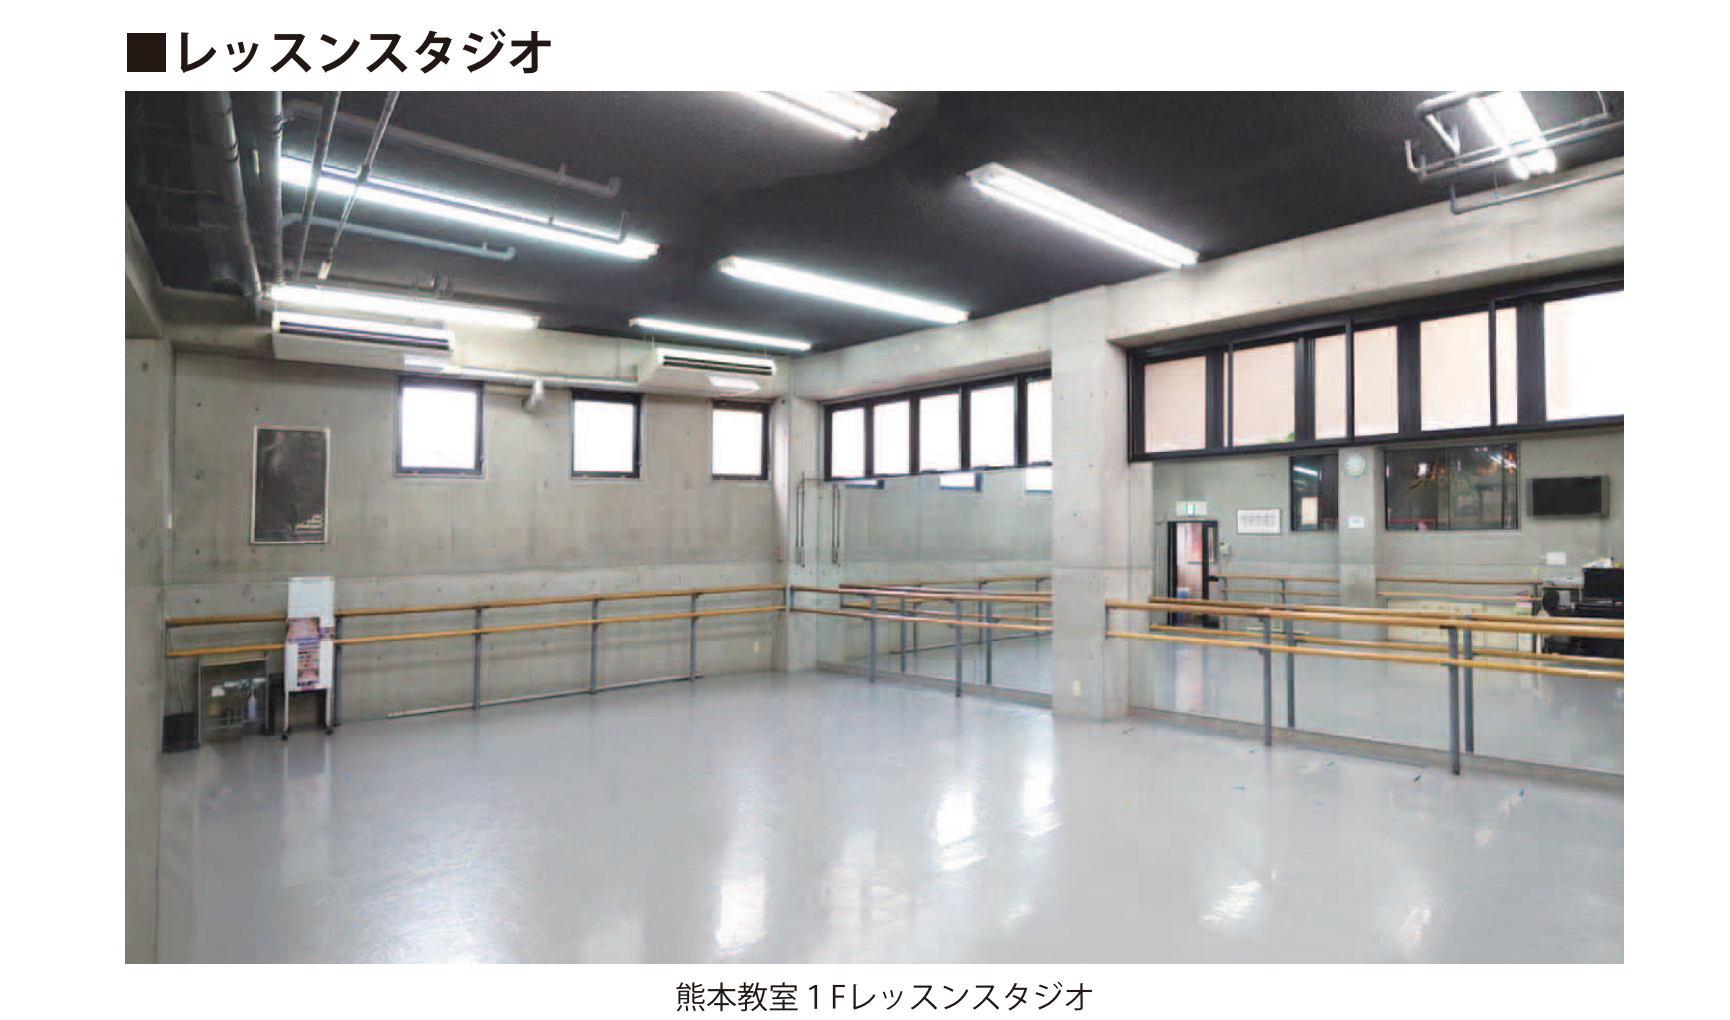 熊本教室1Fレッスンスタジオ